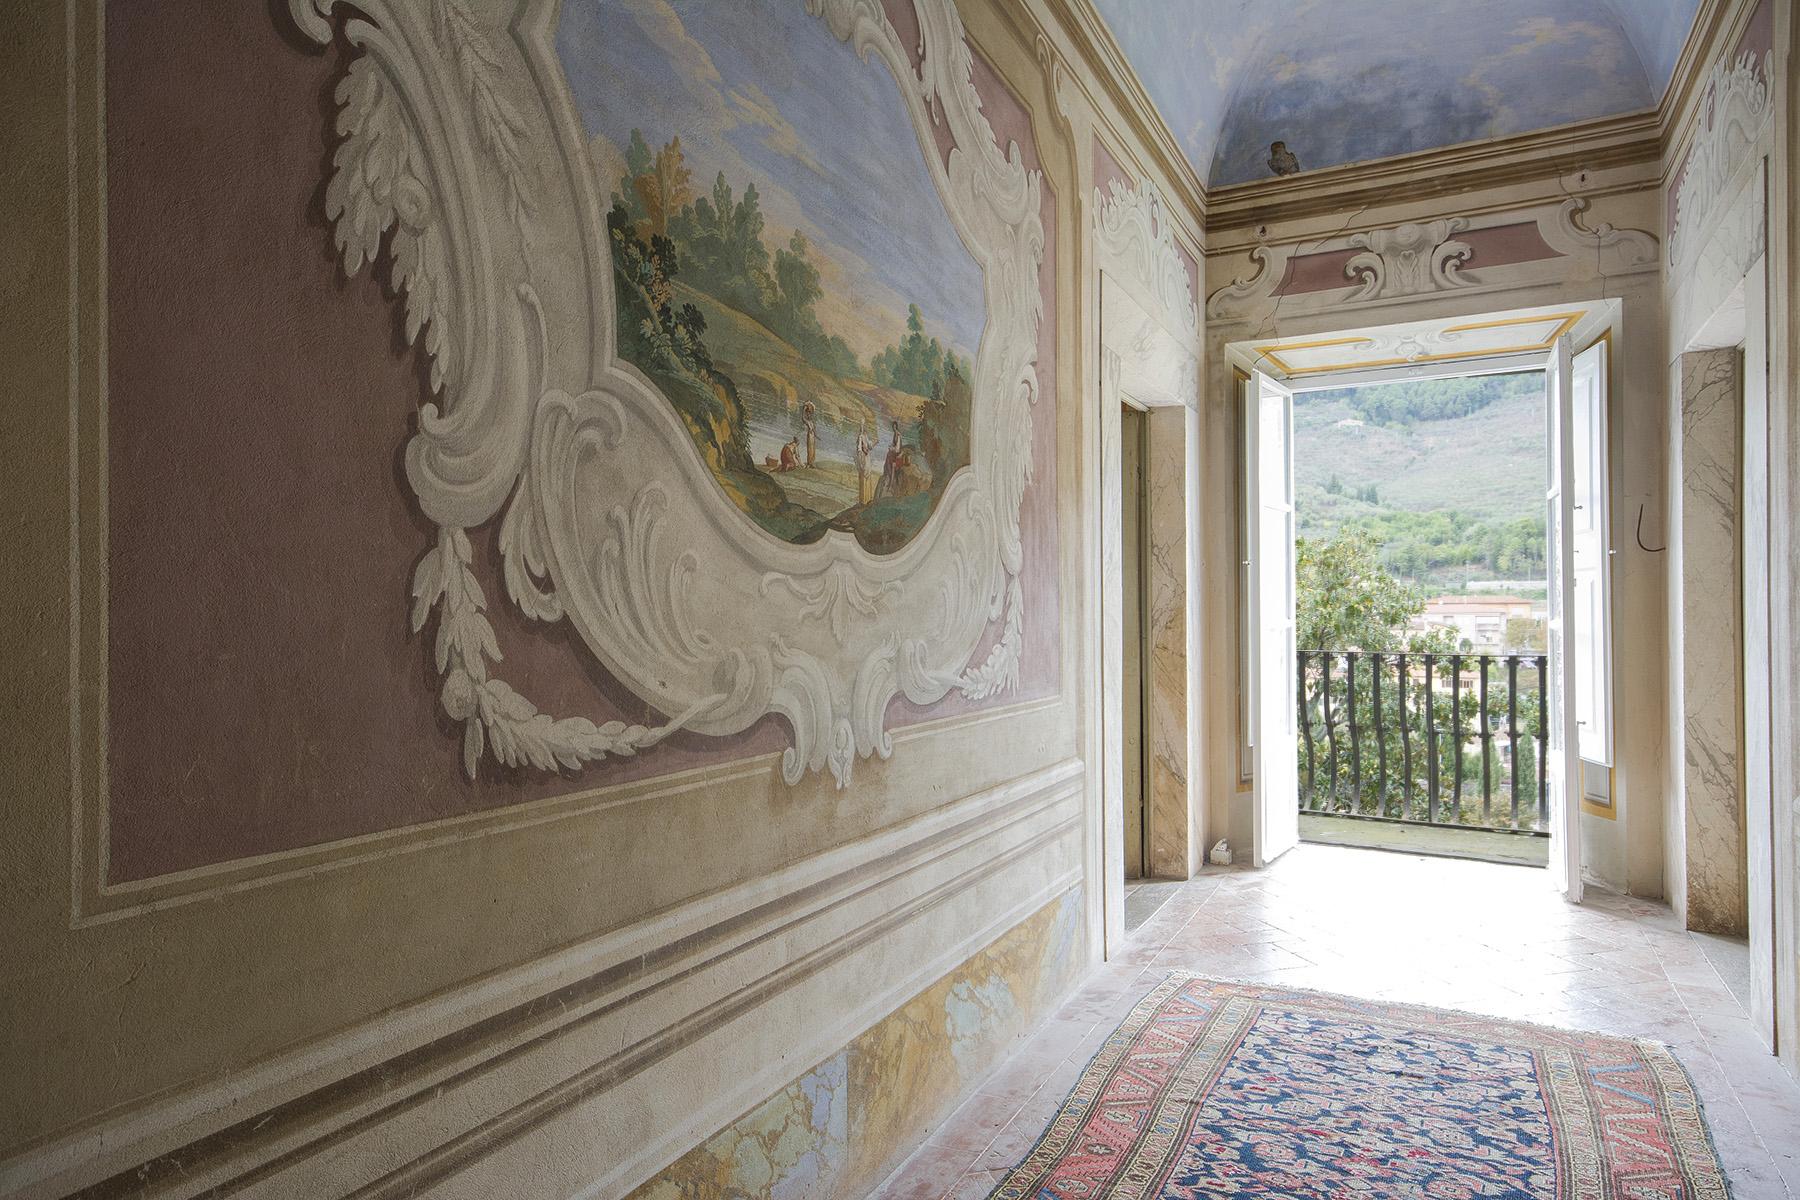 Meravigliosa Villa Medicea sulle colline Pisane - 19